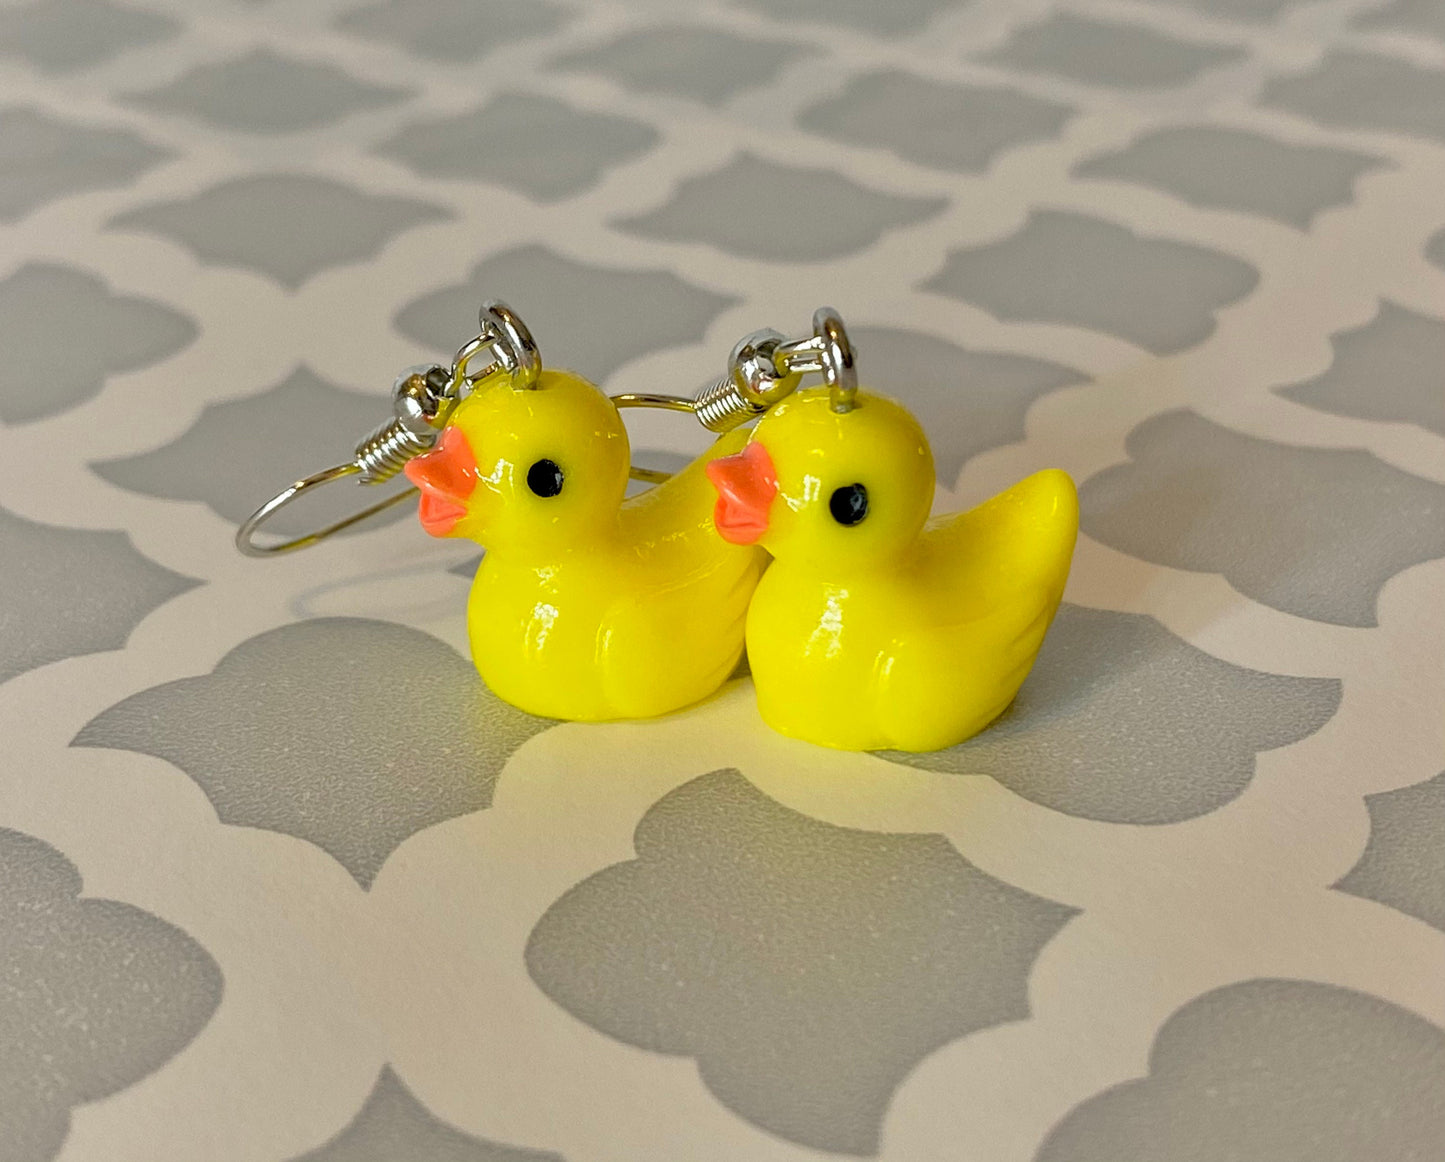 Duck Dangling Earrings